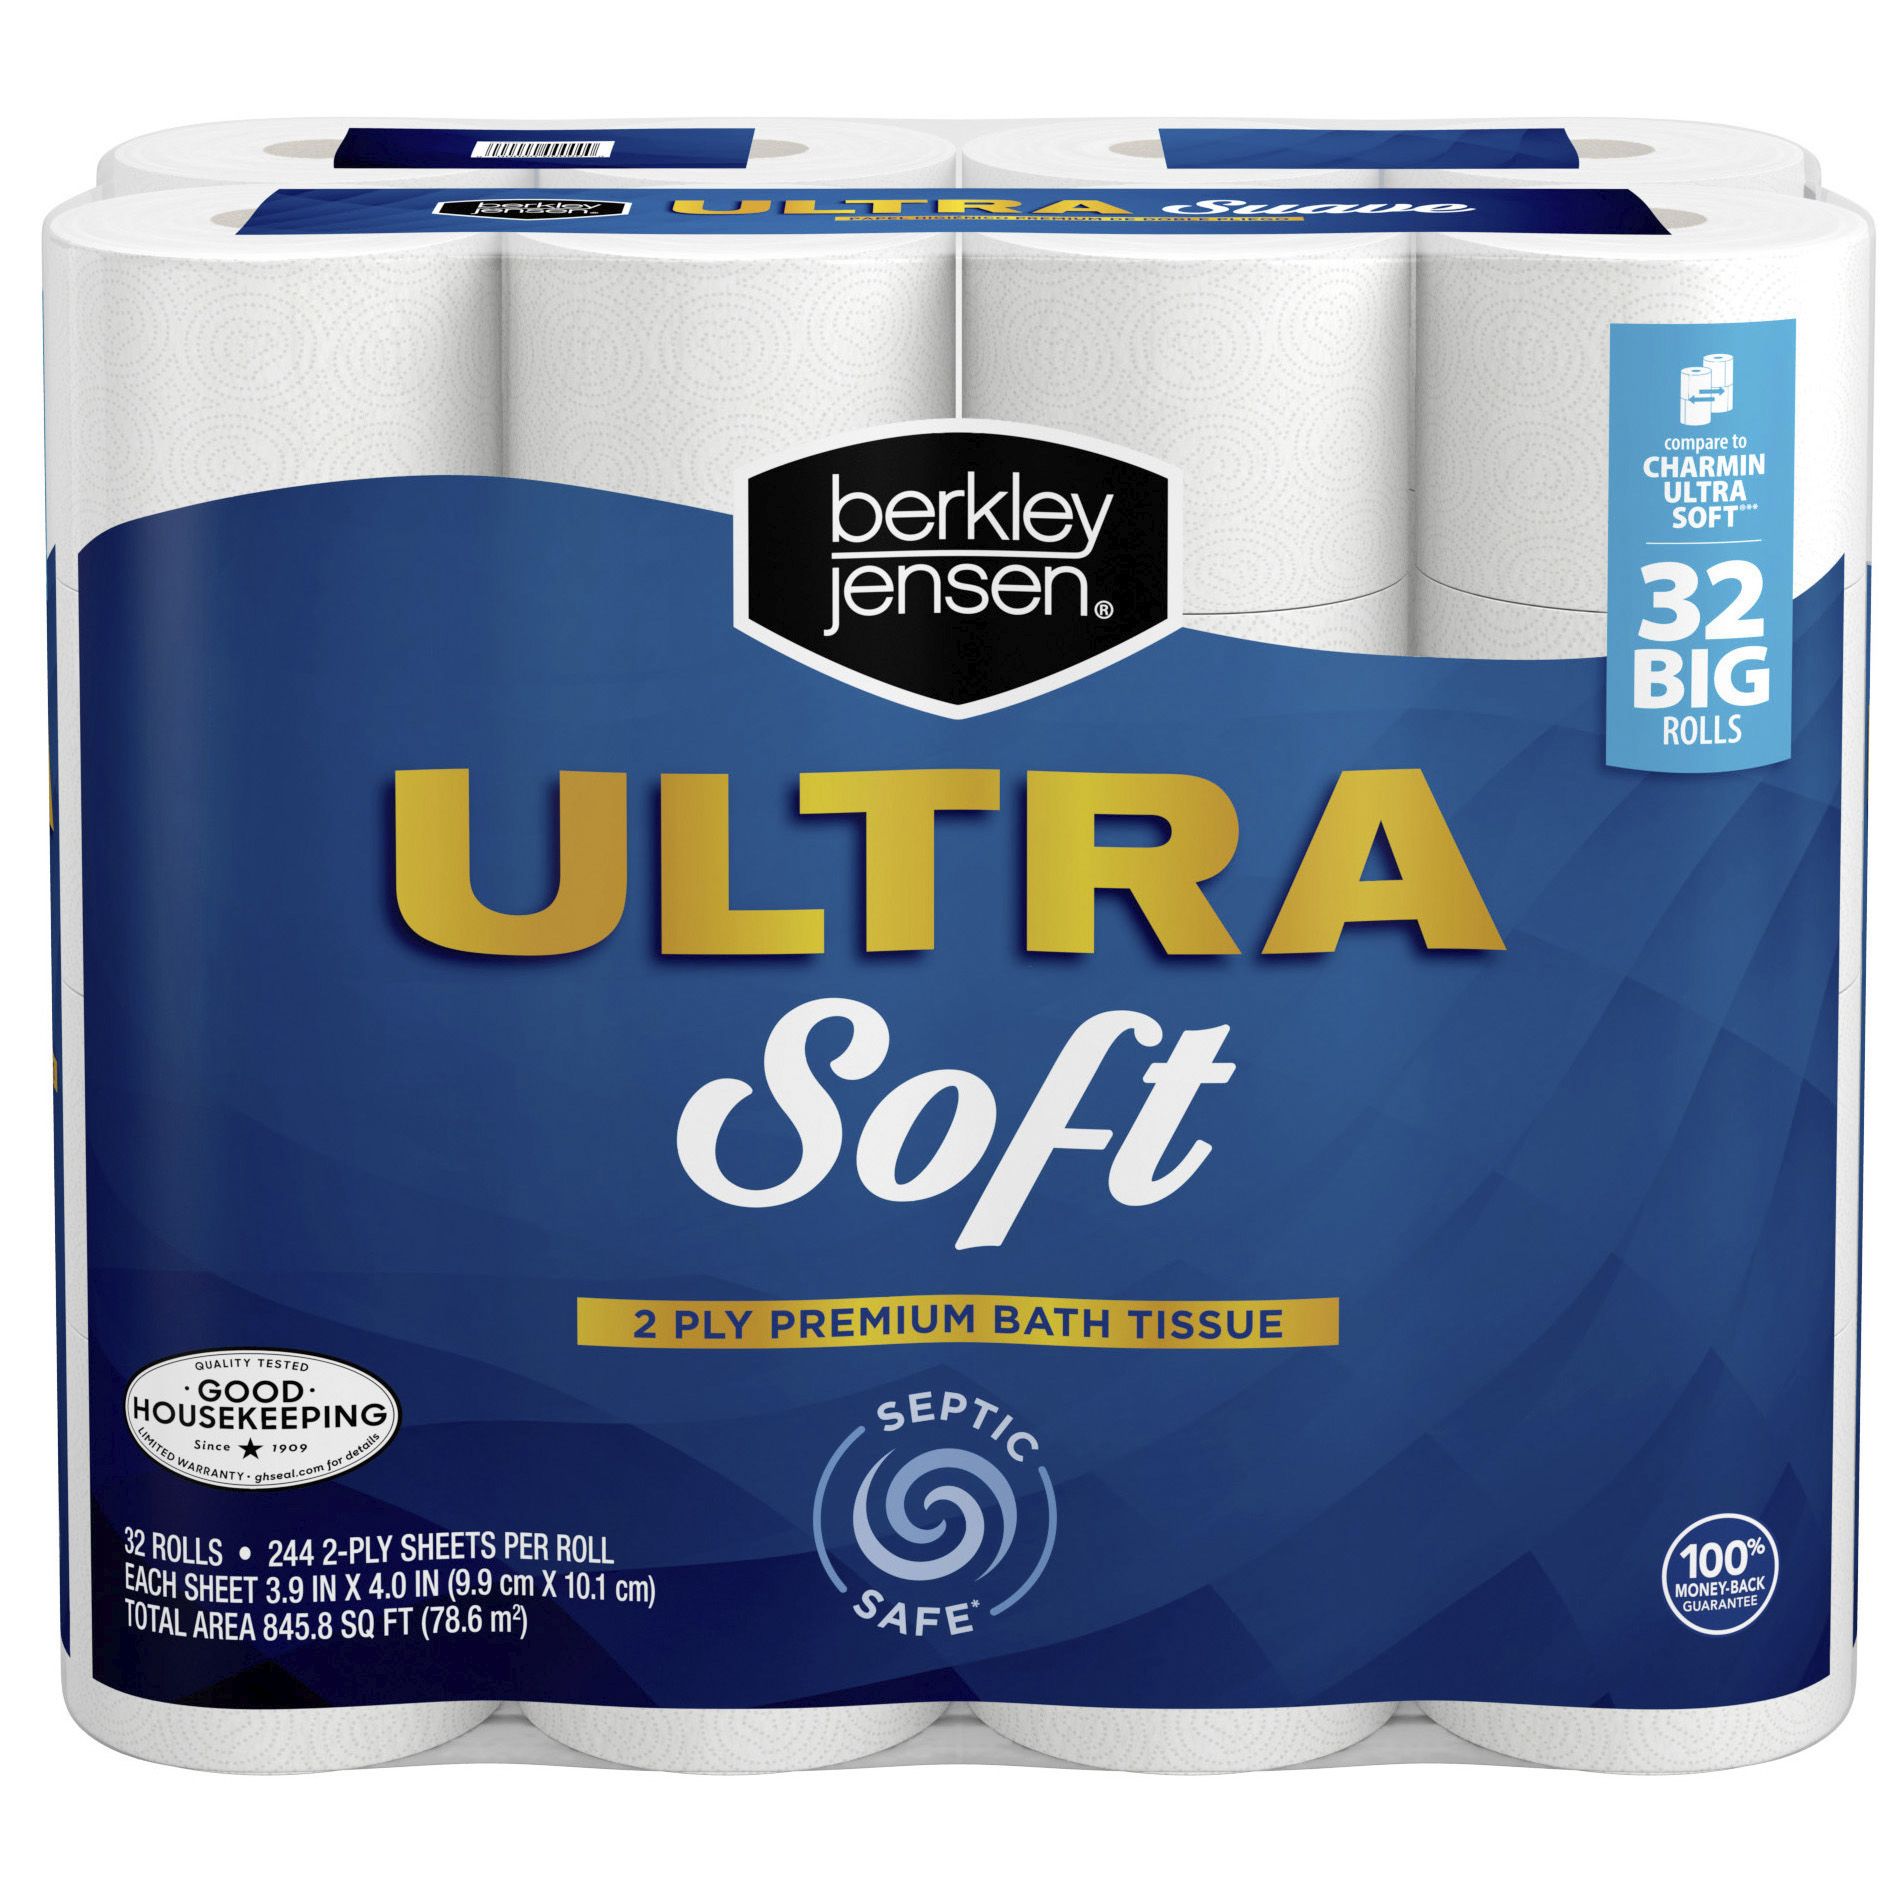 Berkley Jensen Ultra Soft Bath Tissue, 32 ct.